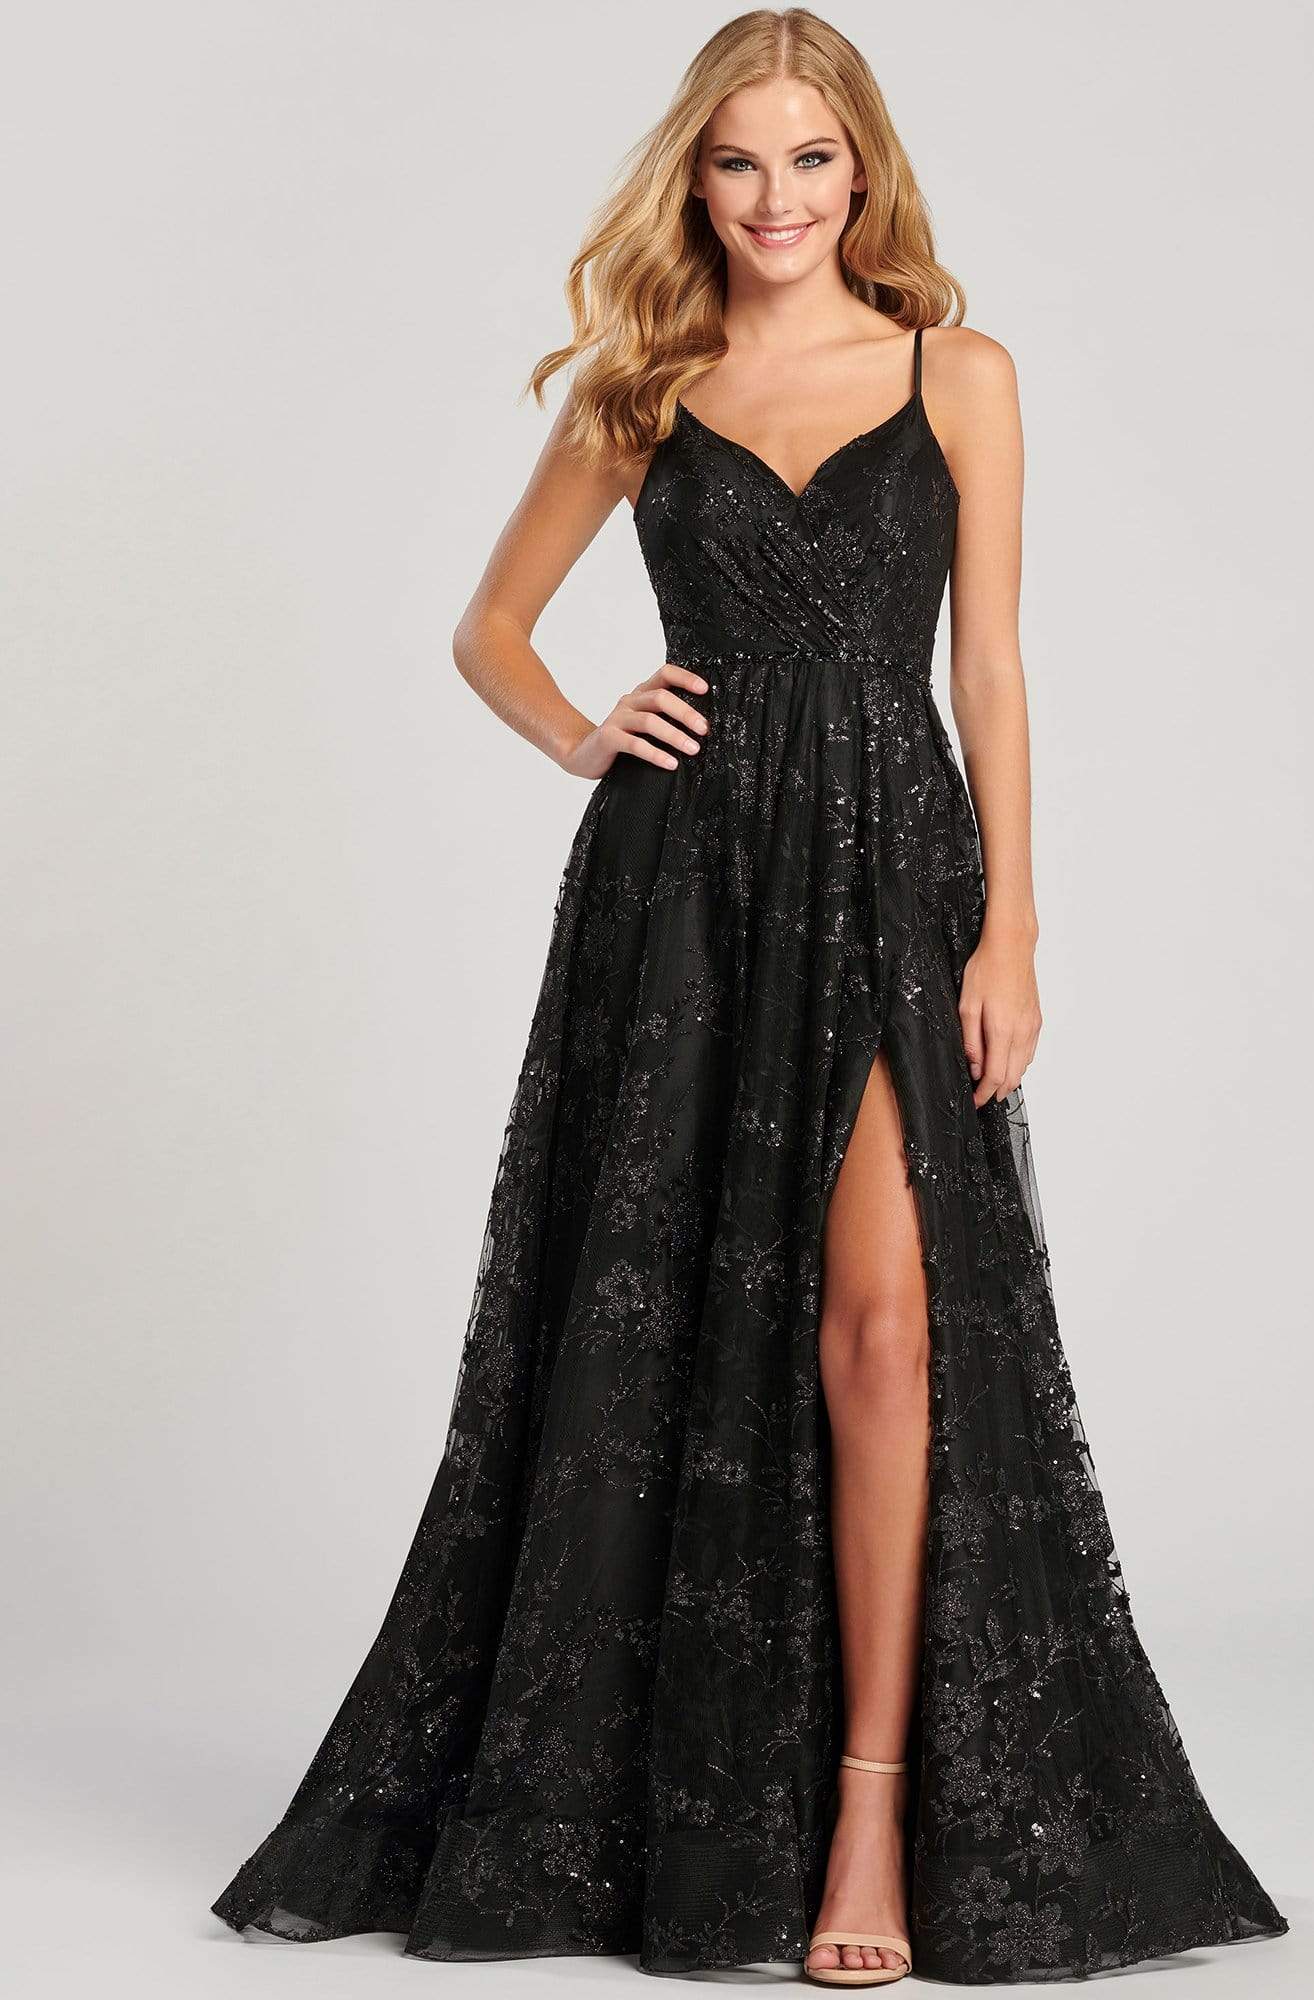 Colette for Mon Cheri - CL12006 V Neck Open Back Glitter Tulle Gown Evening Dresses 0 / Black/Black